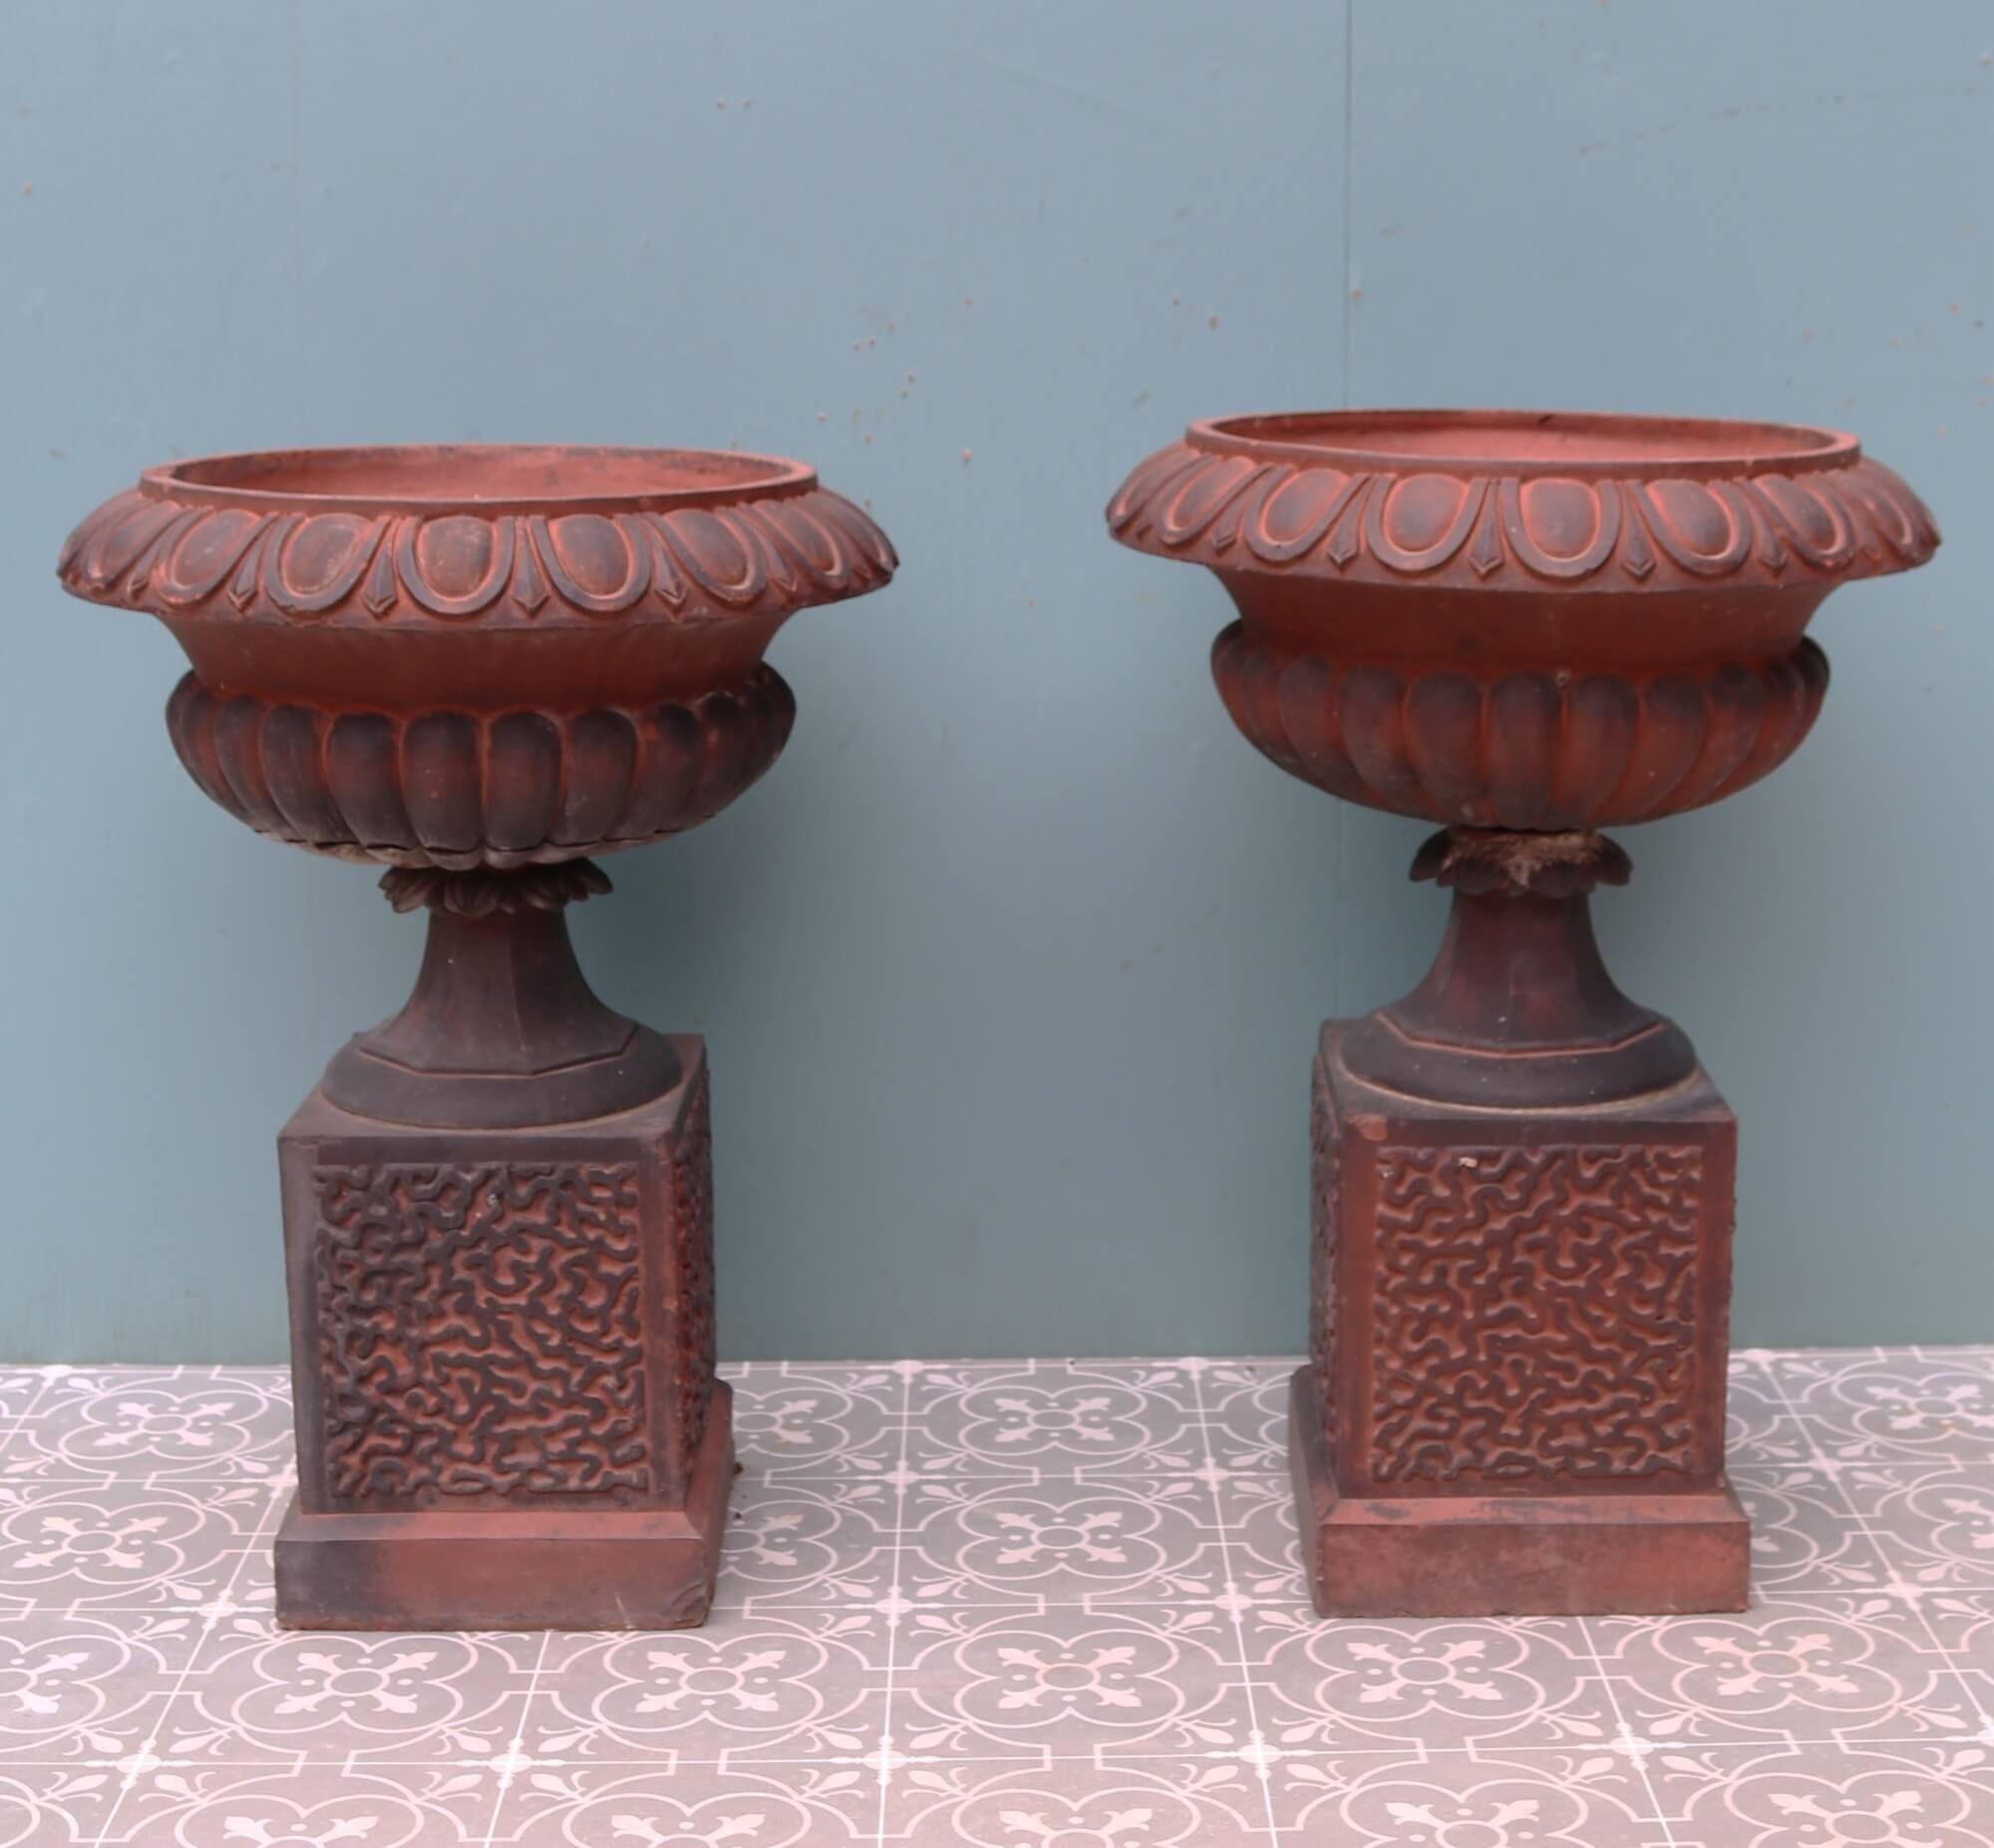 Datant de la fin du XIXe siècle, cette paire d'urnes de jardin en terre cuite est un bel ajout à un jardin de campagne. Elles sont réalisées en terre cuite rouge et présentent par endroits une patine foncée qui indique leur ancienneté. Chacun